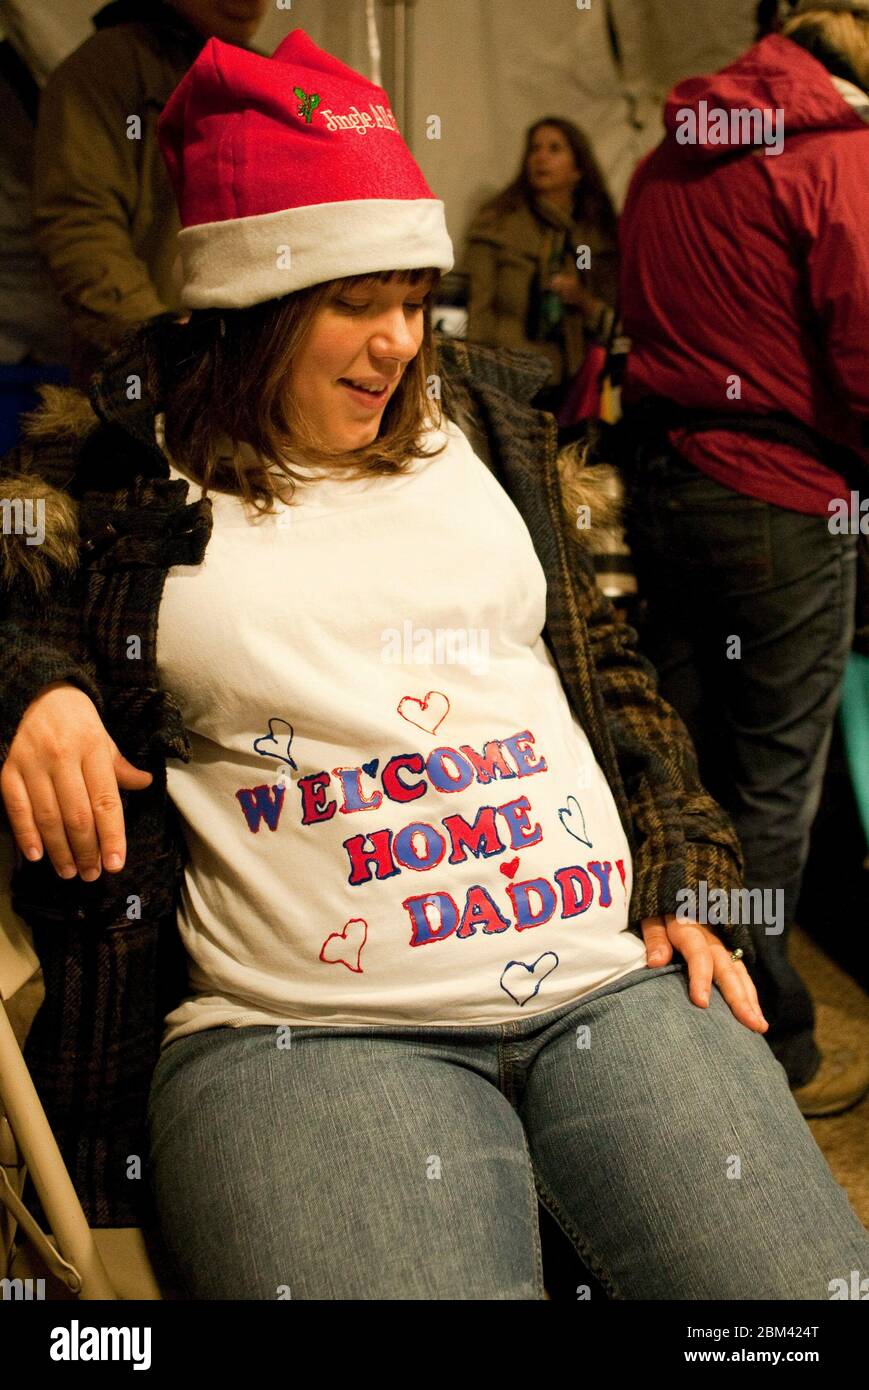 Fort Hood Texas USA, 24 dicembre 2011: Una donna incinta fa sport un cartello di benvenuto sul suo baby Bump mentre aspetta che il marito arrivi a casa dal suo schieramento dell'esercito in Iraq. ©Marjorie Kamys Cotera/Daemmrich Photography Foto Stock